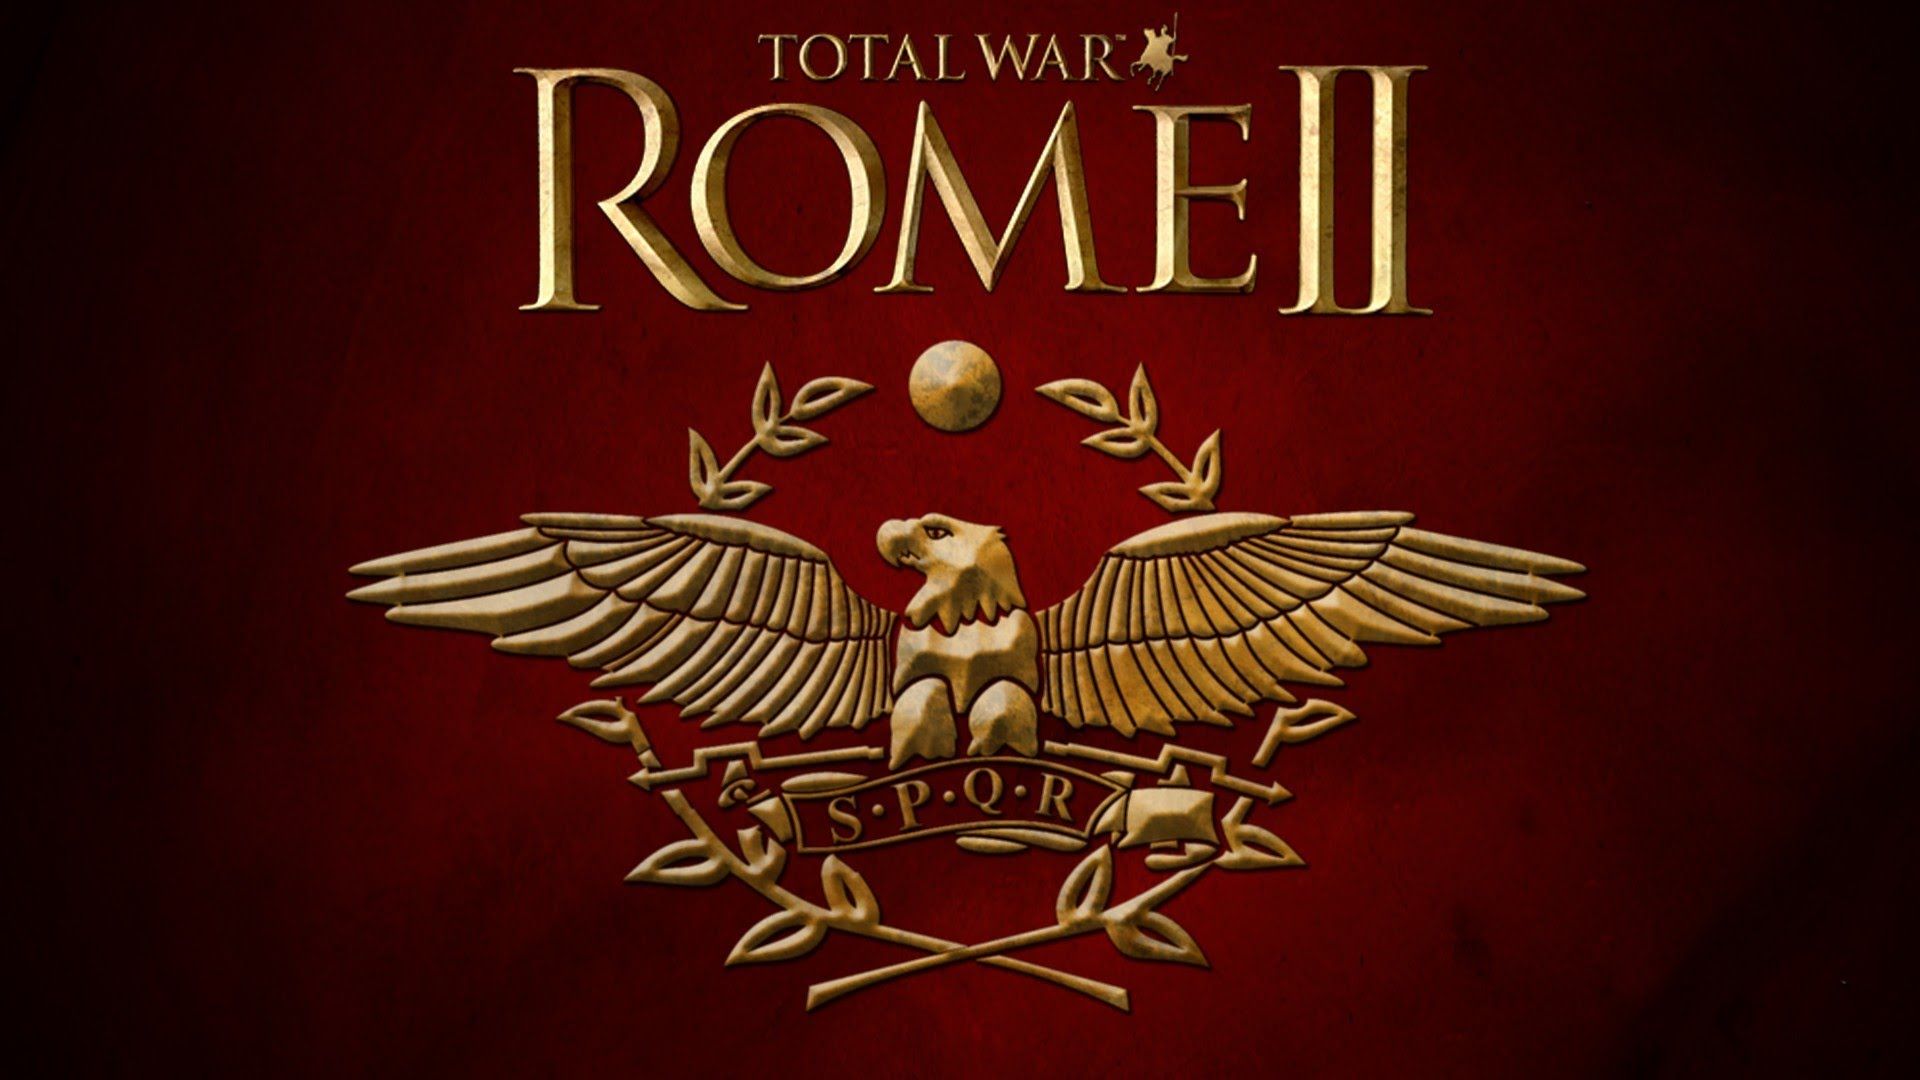 Rome 2 Total War : SPQR - YouTube